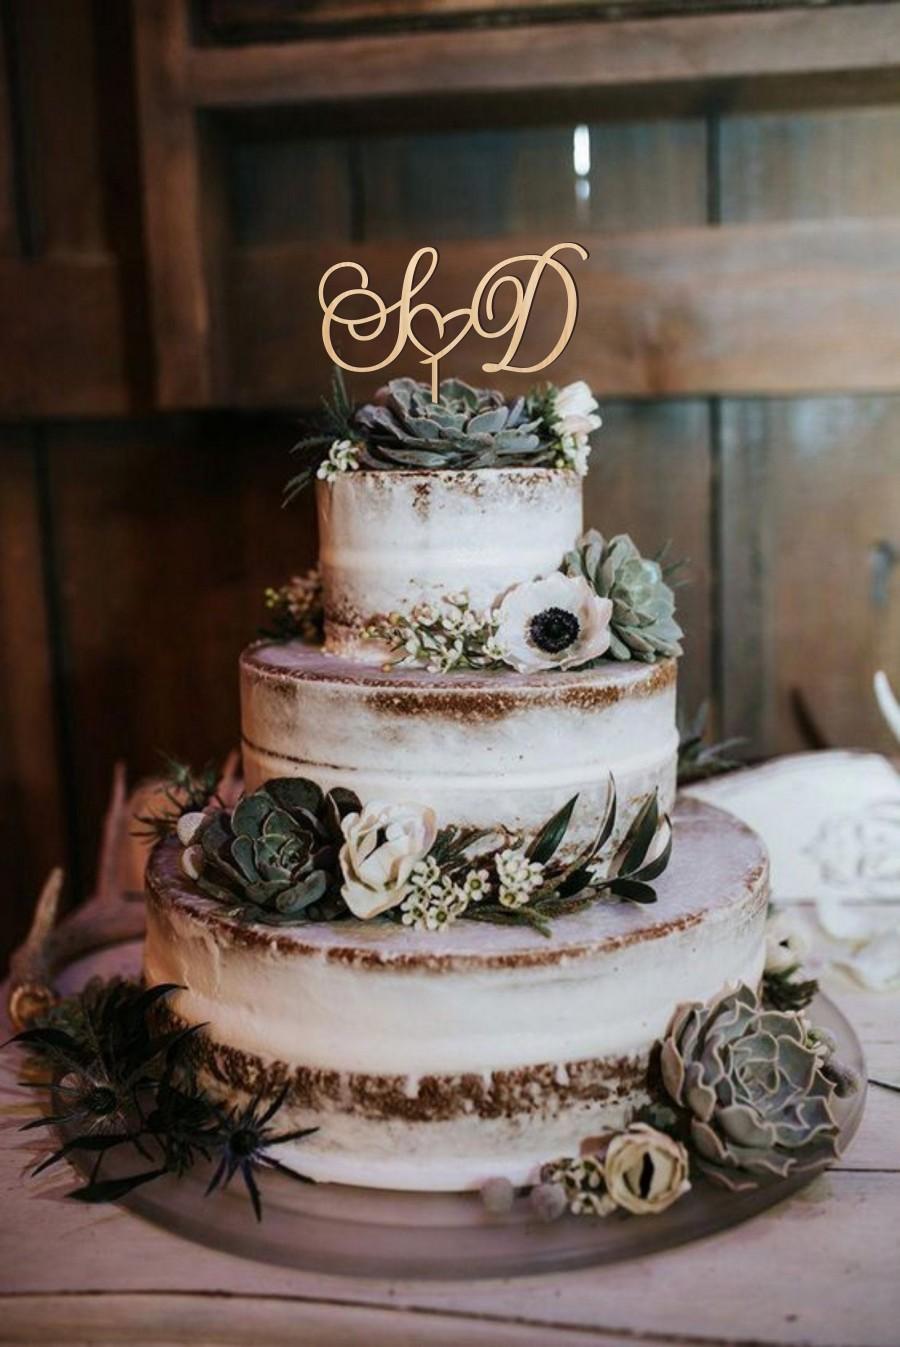 زفاف - Initial letters cake topper for wedding, personalized cake topper, wedding cake topper, heart cake topper in 6 wood types, gold and silver